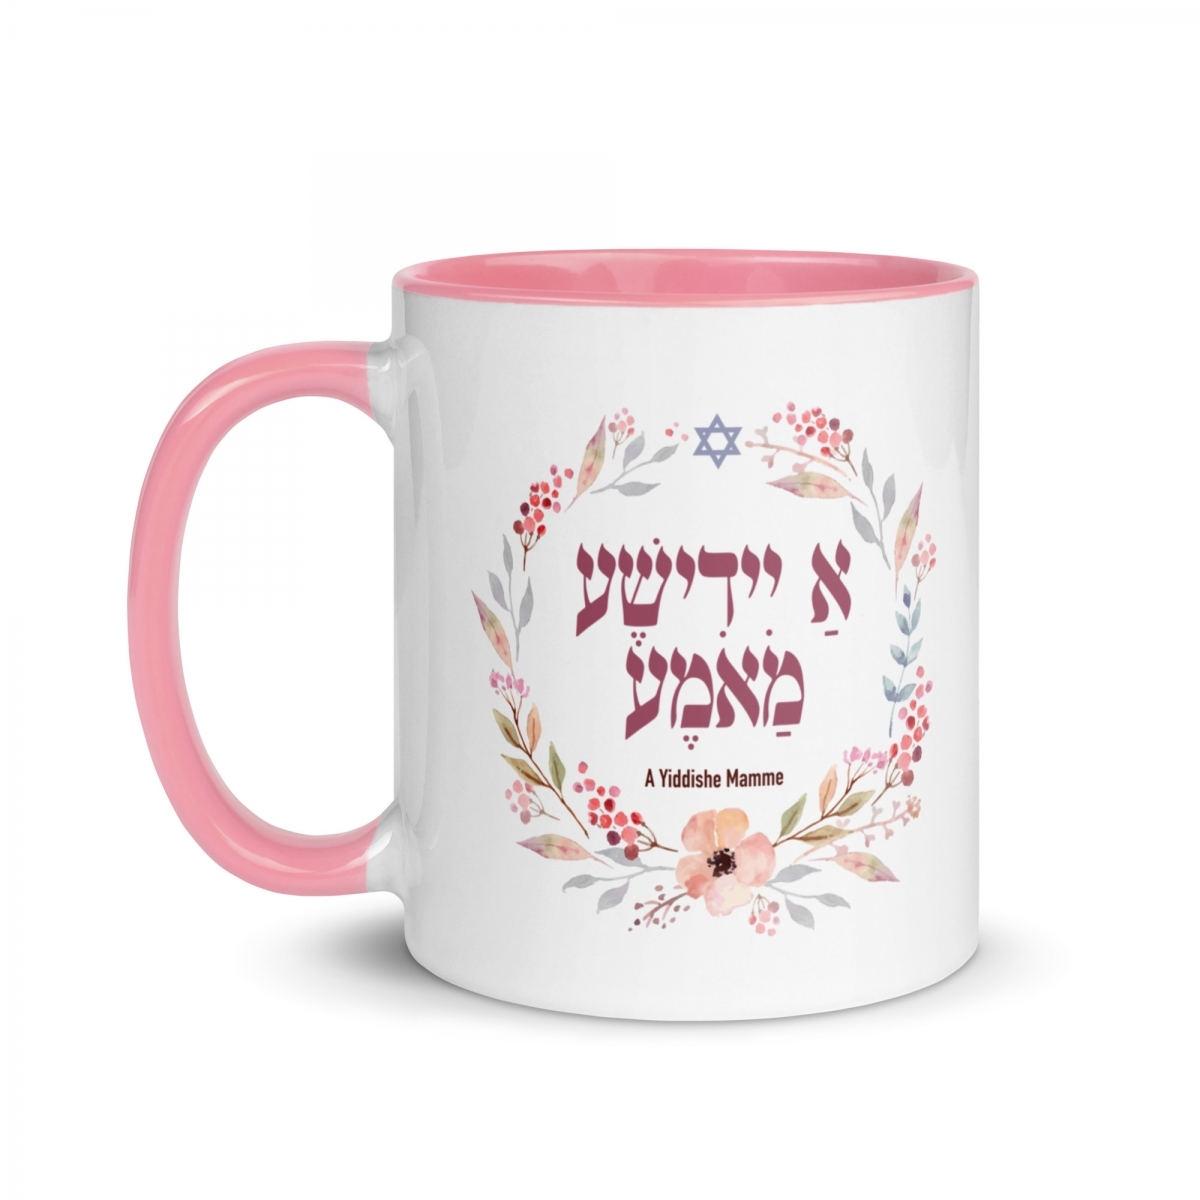 A Yiddishe Mamme Mug - Choice of Inside Color - 1